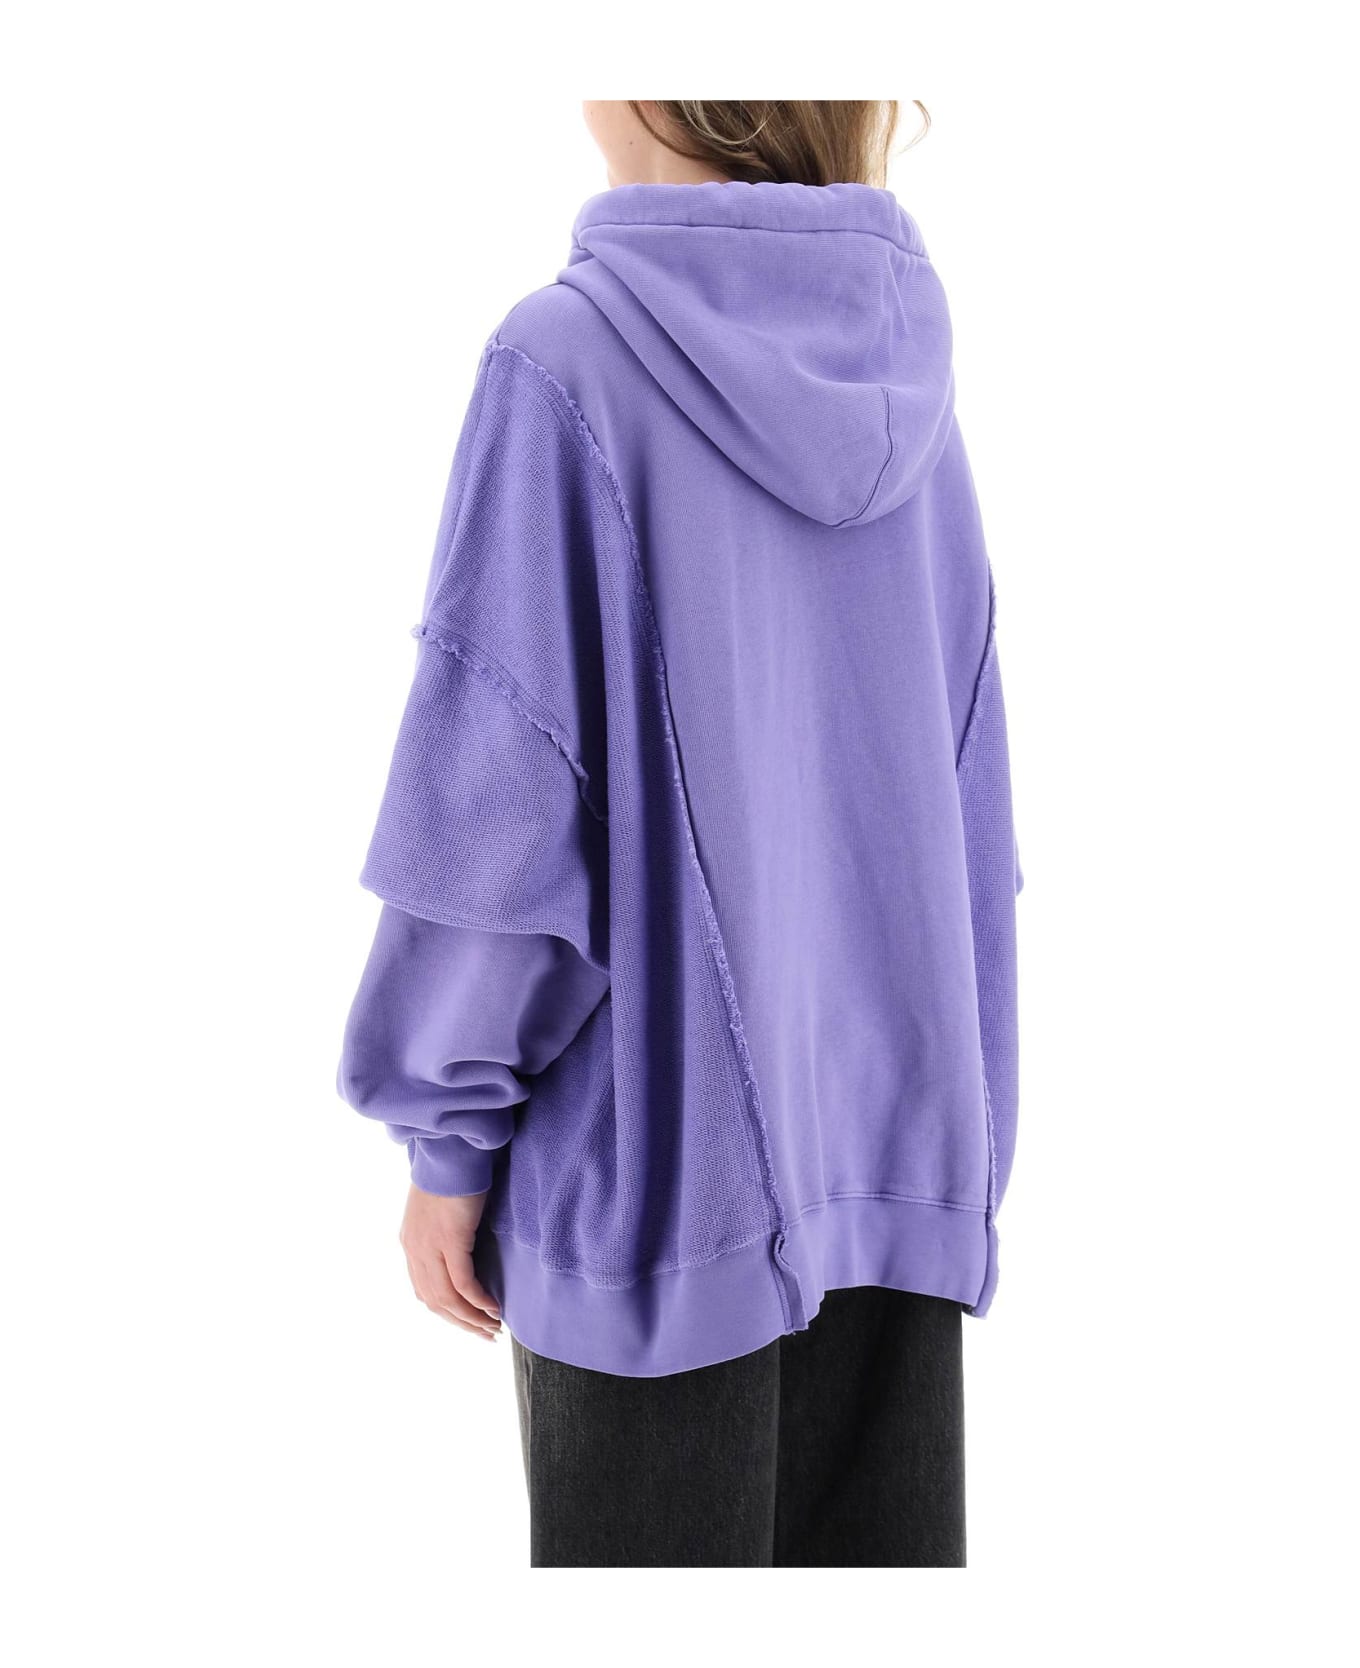 Khrisjoy Oversized Hooded Sweatshirt - WISTERIA (Purple) フリース